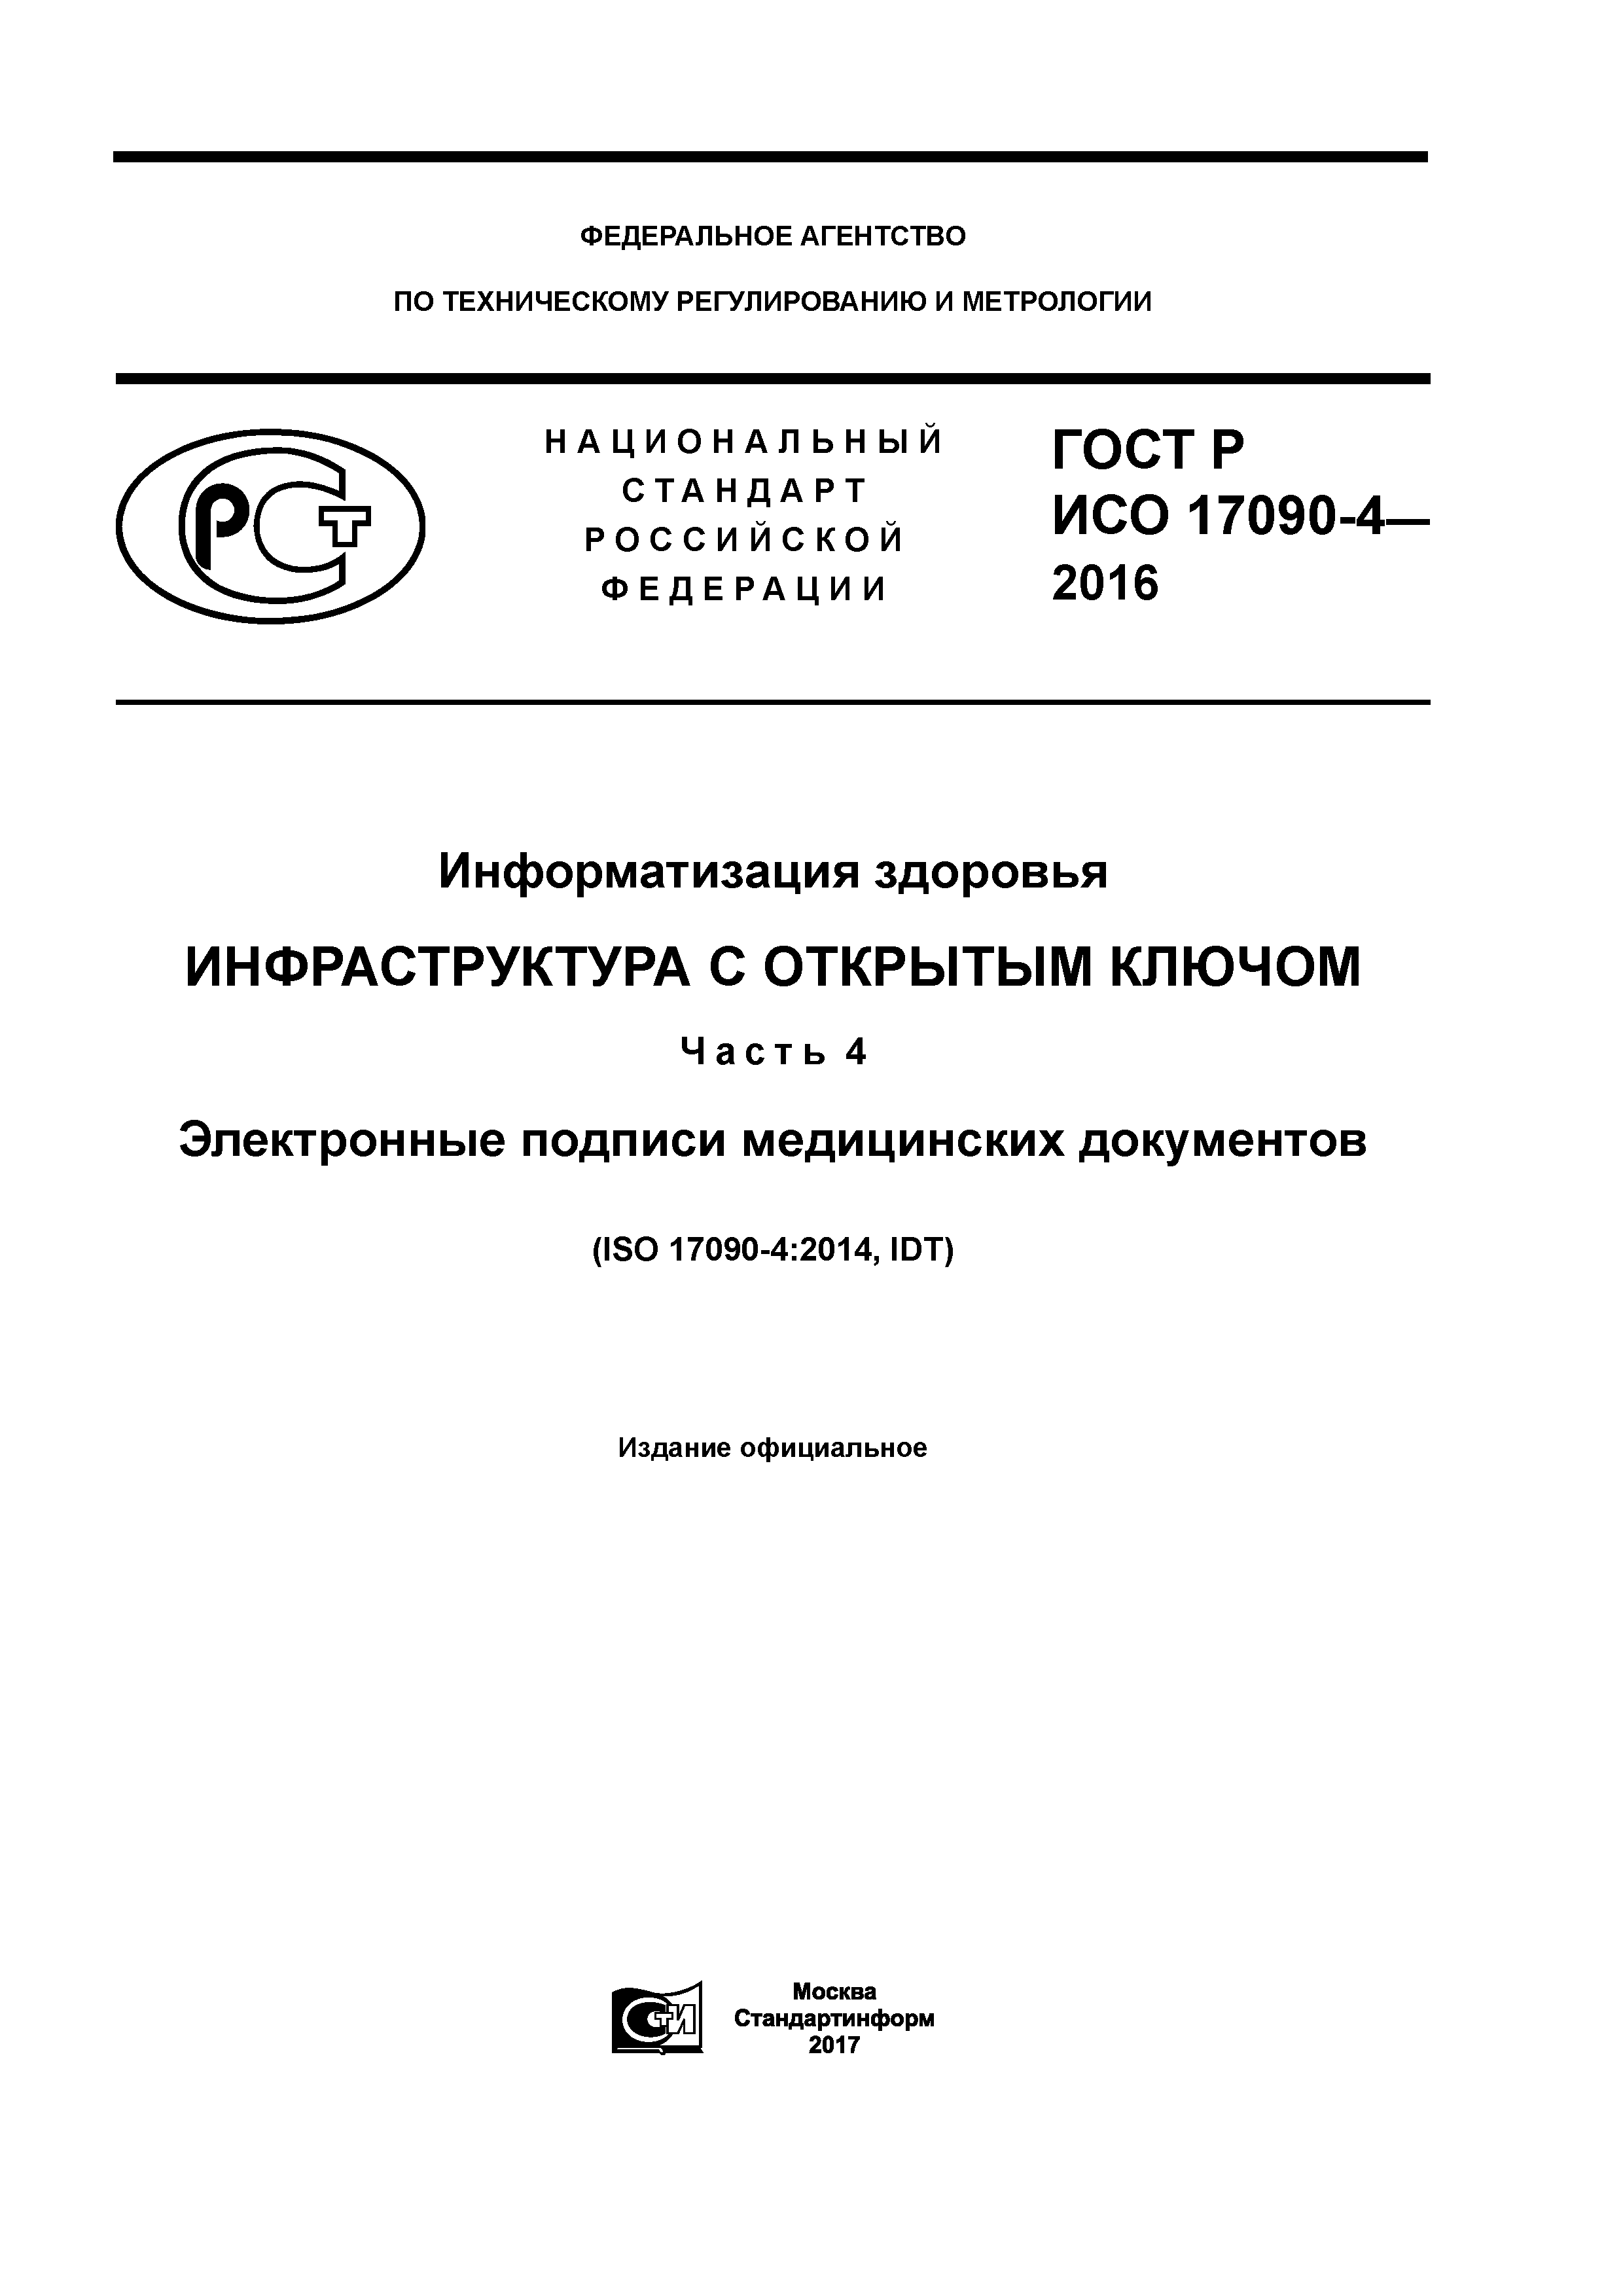 ГОСТ Р ИСО 17090-4-2016